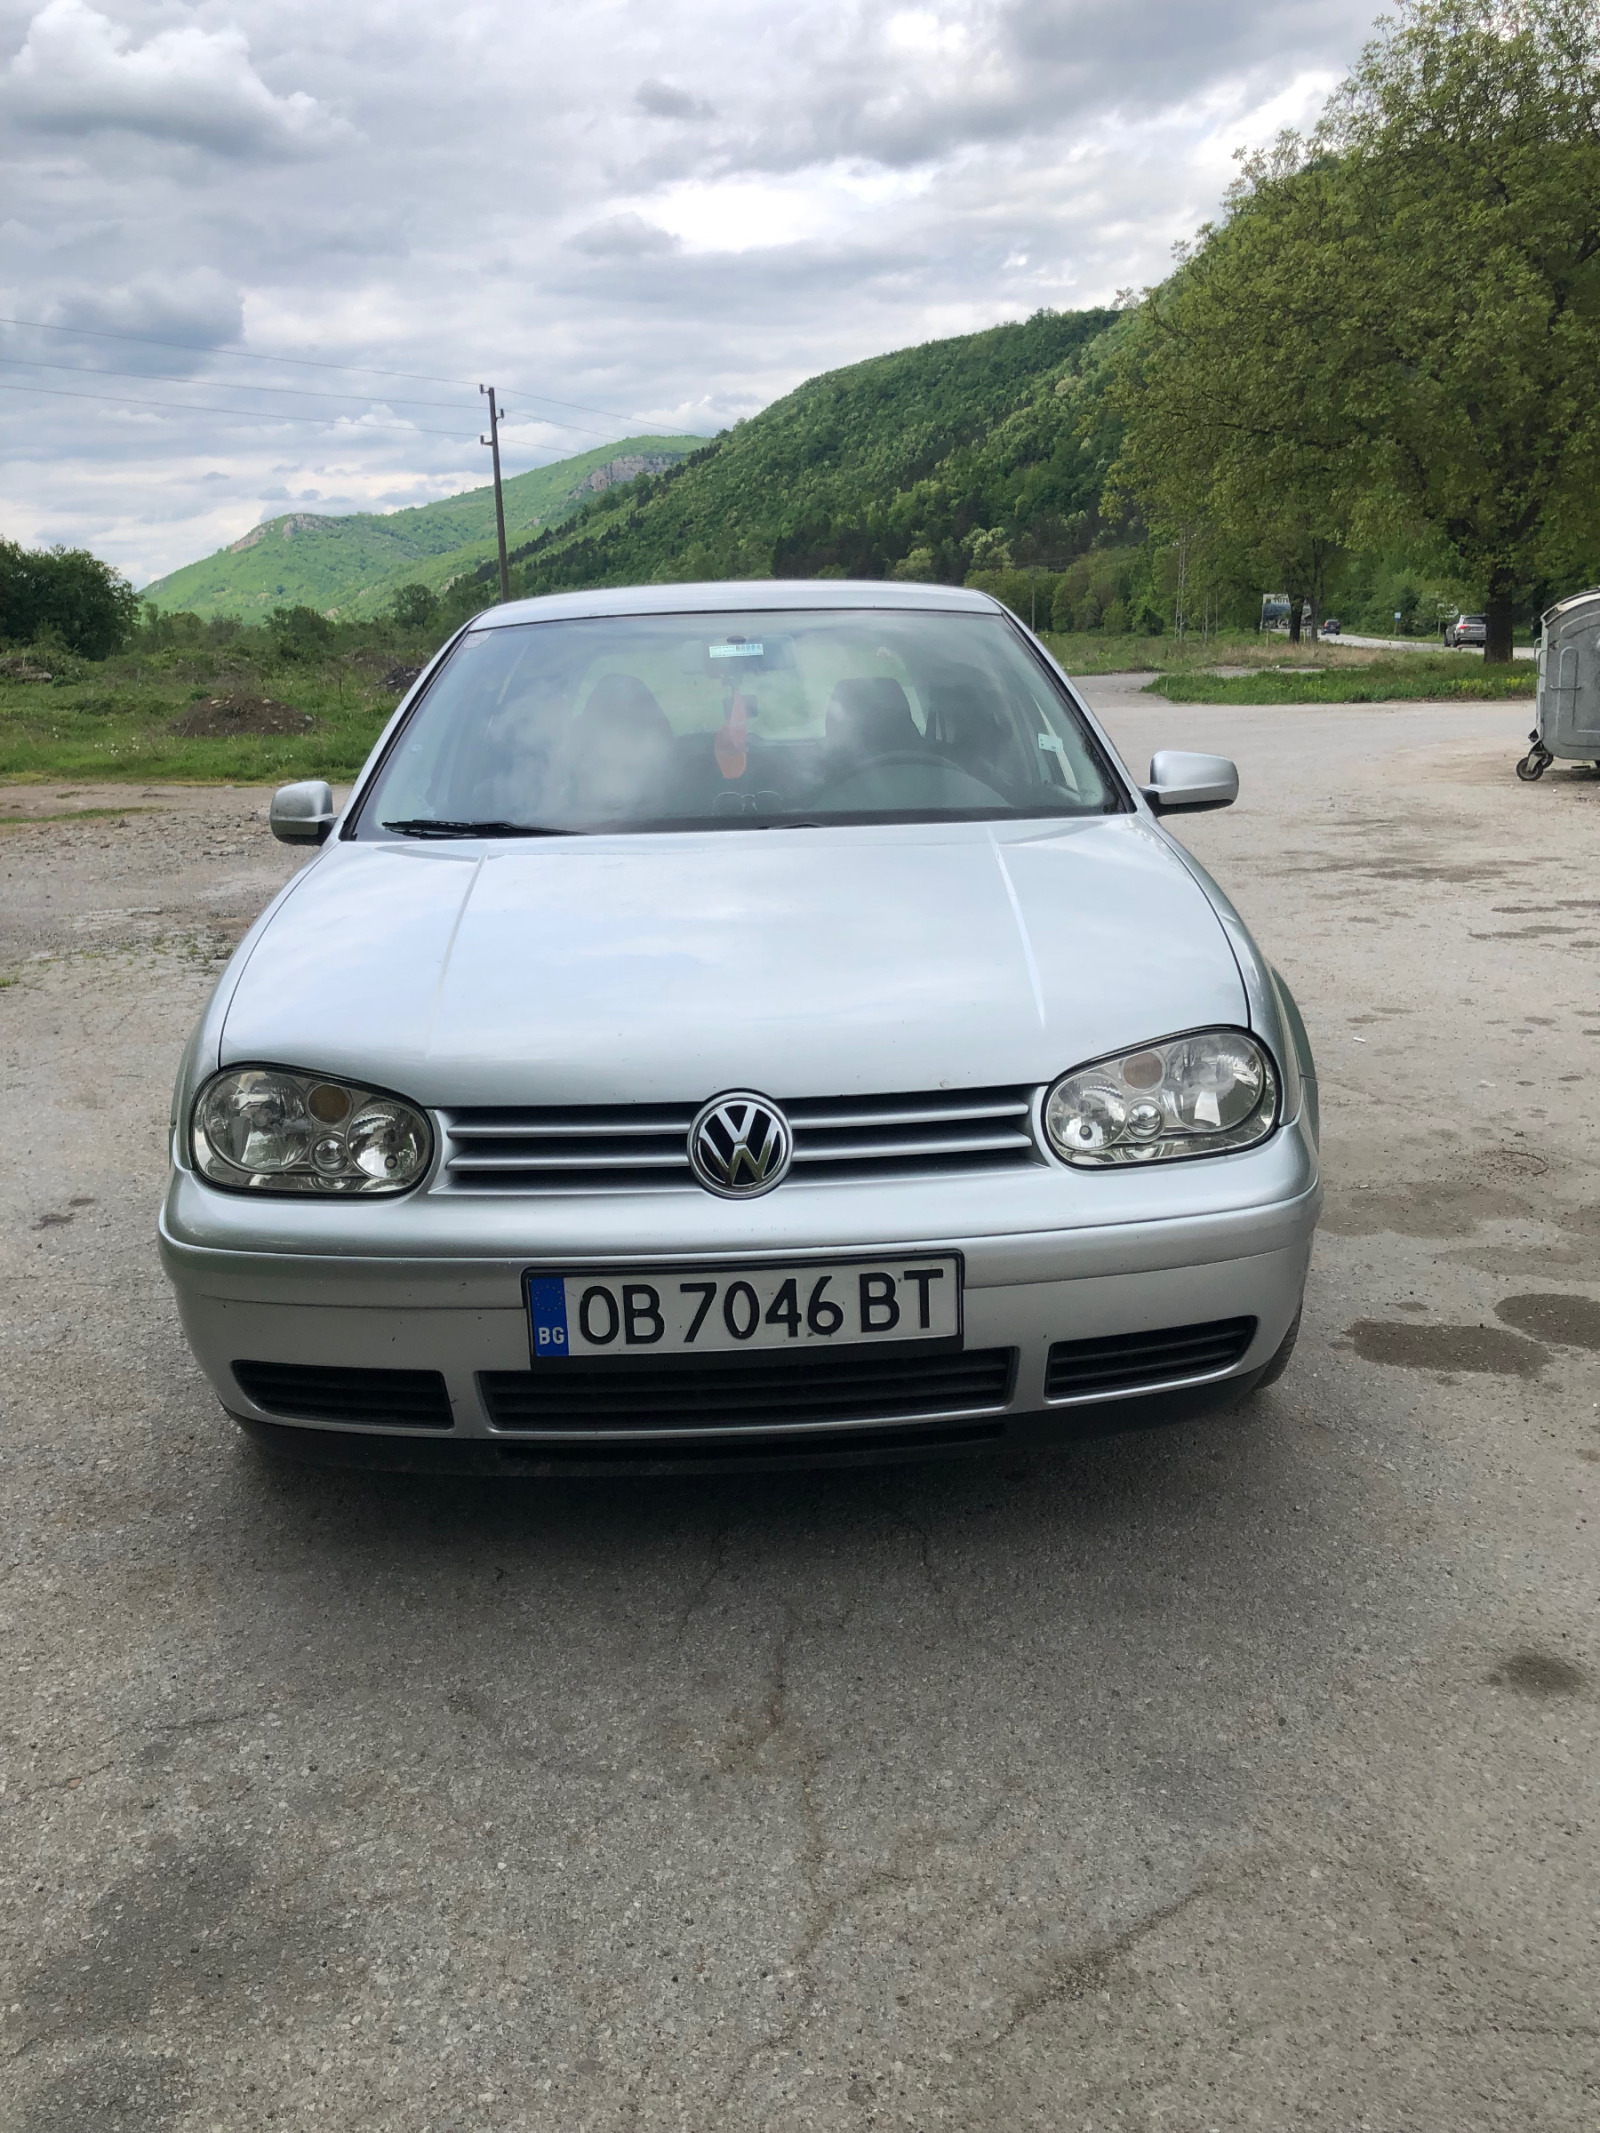 VW Golf  - изображение 1